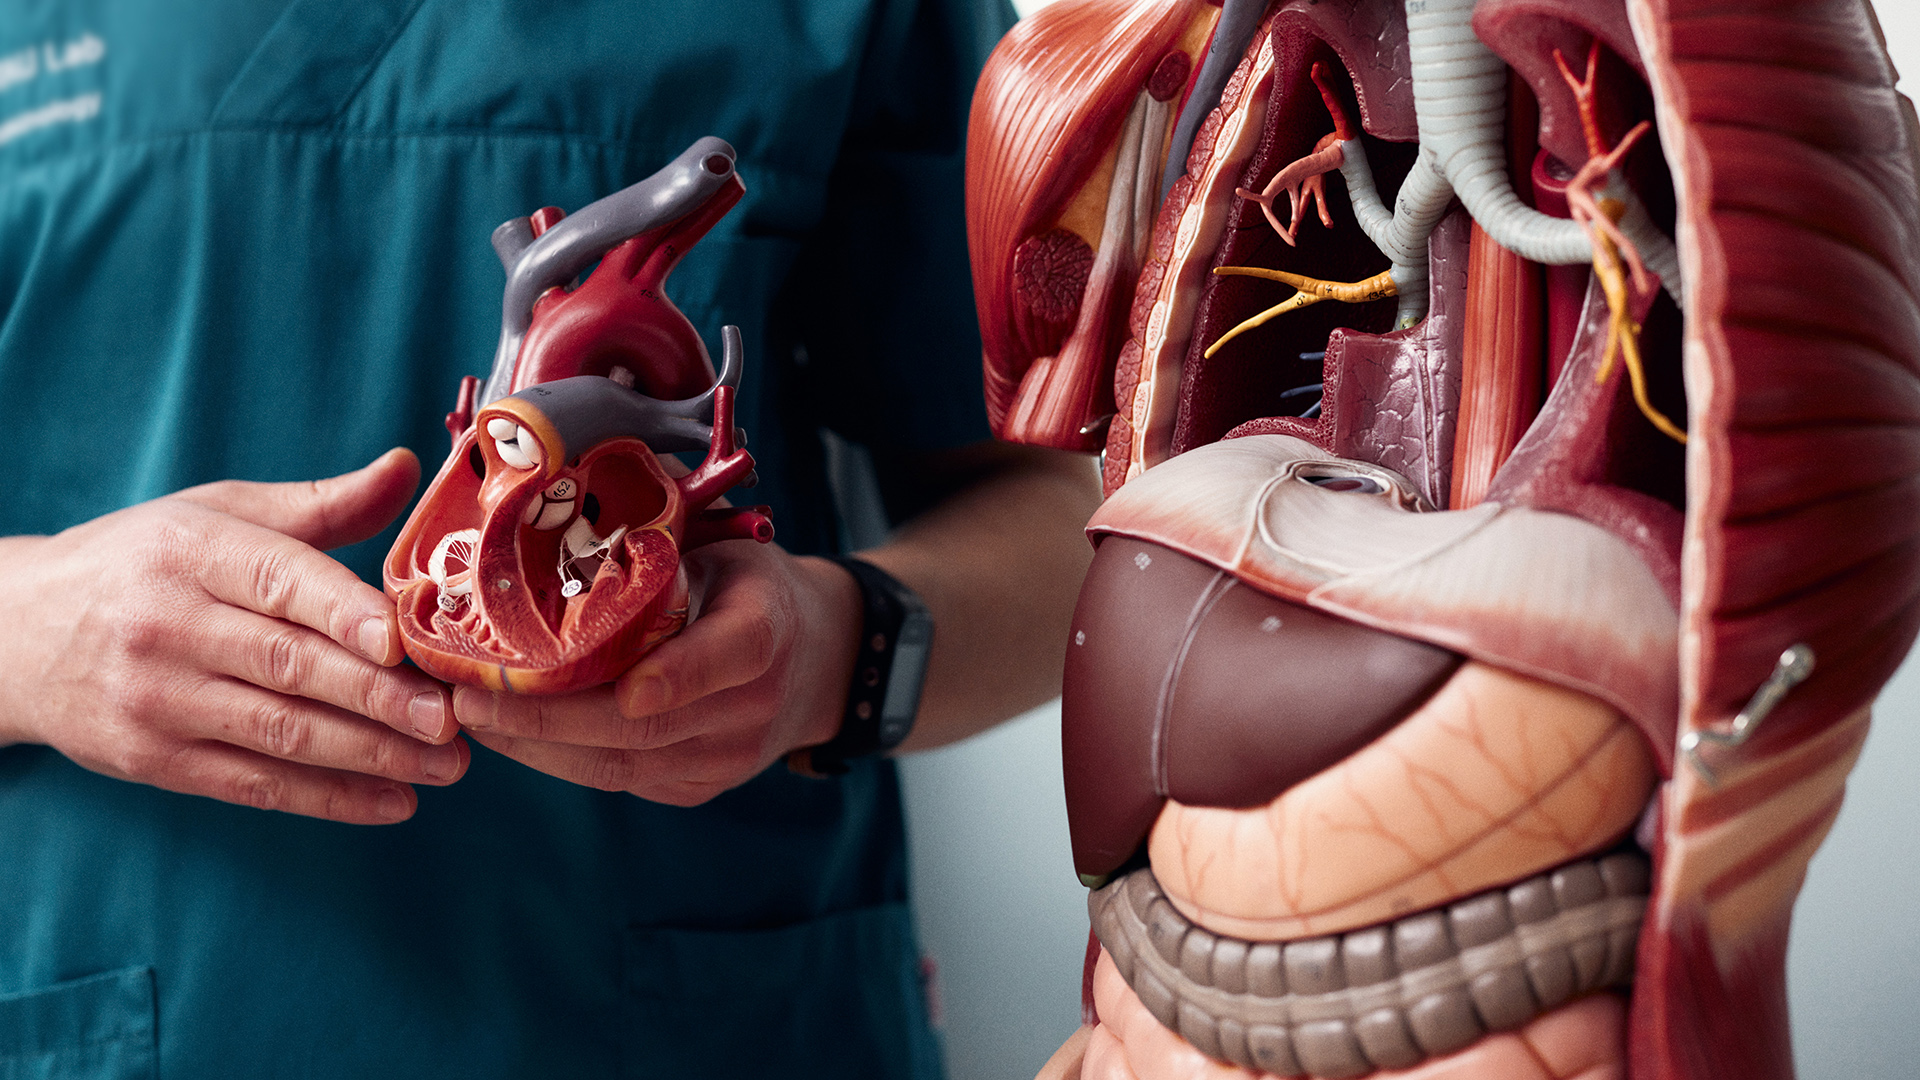 Medizinisches Modell eines Torso, neben dem eine Person in OP-Kleidung steht. Die Person hält das aus dem Modell entnommene Herz in der Hand.